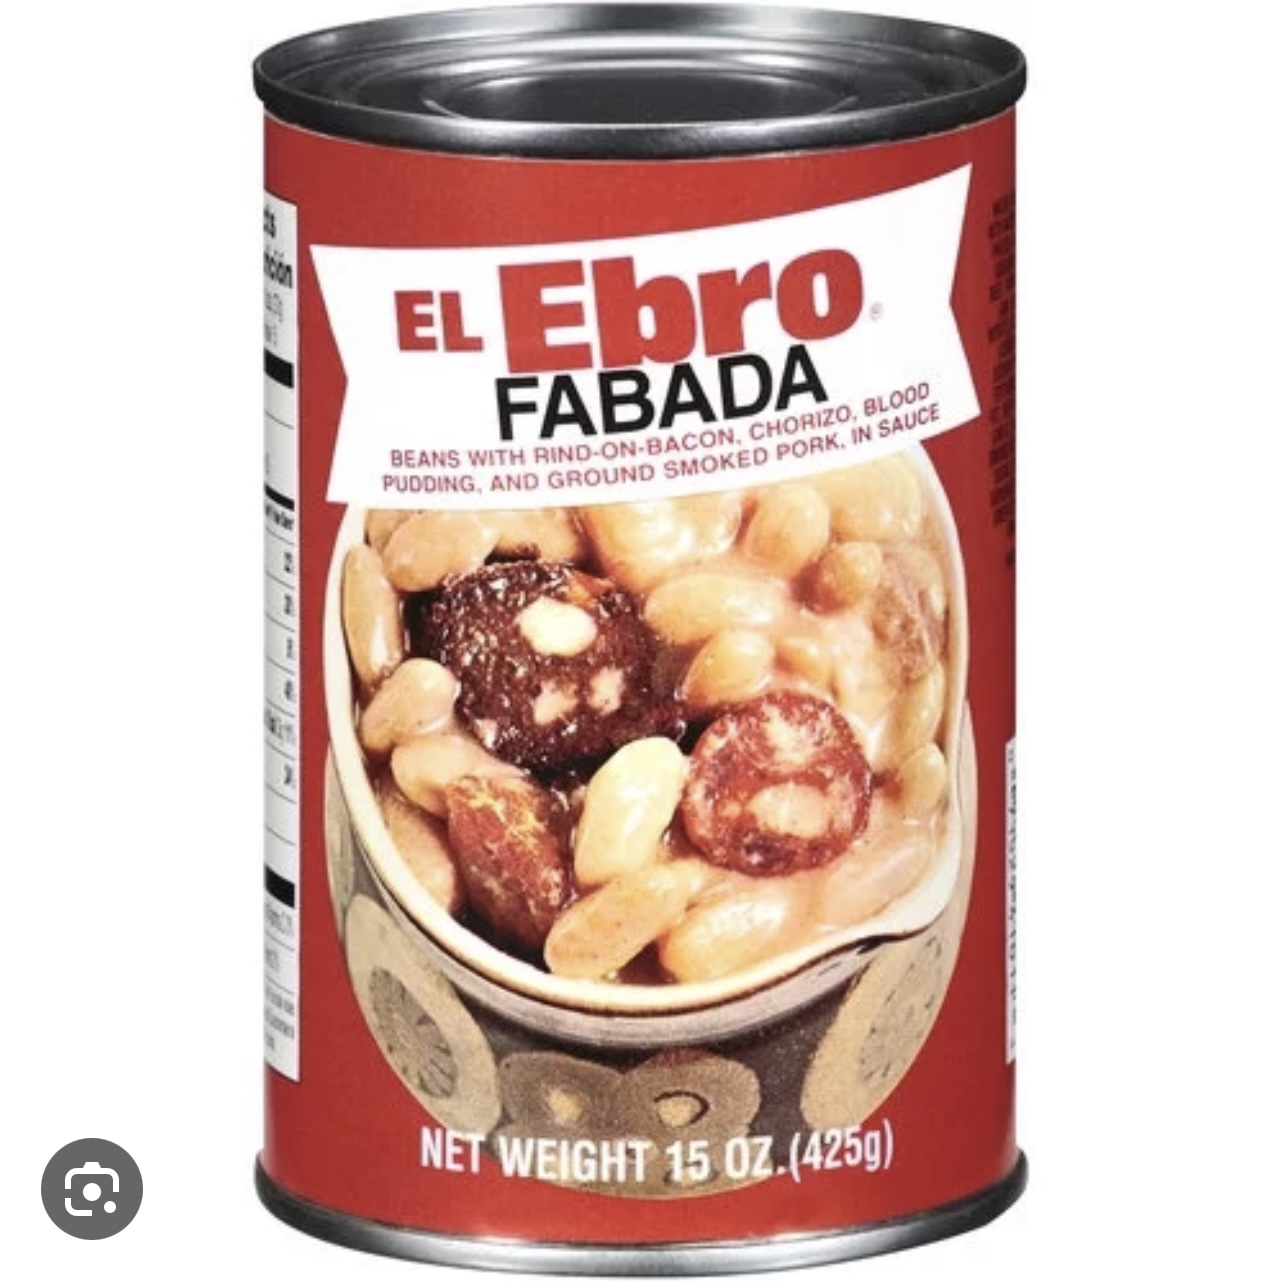 El Ebro Fabada Soup, 15 oz - image 2 of 6